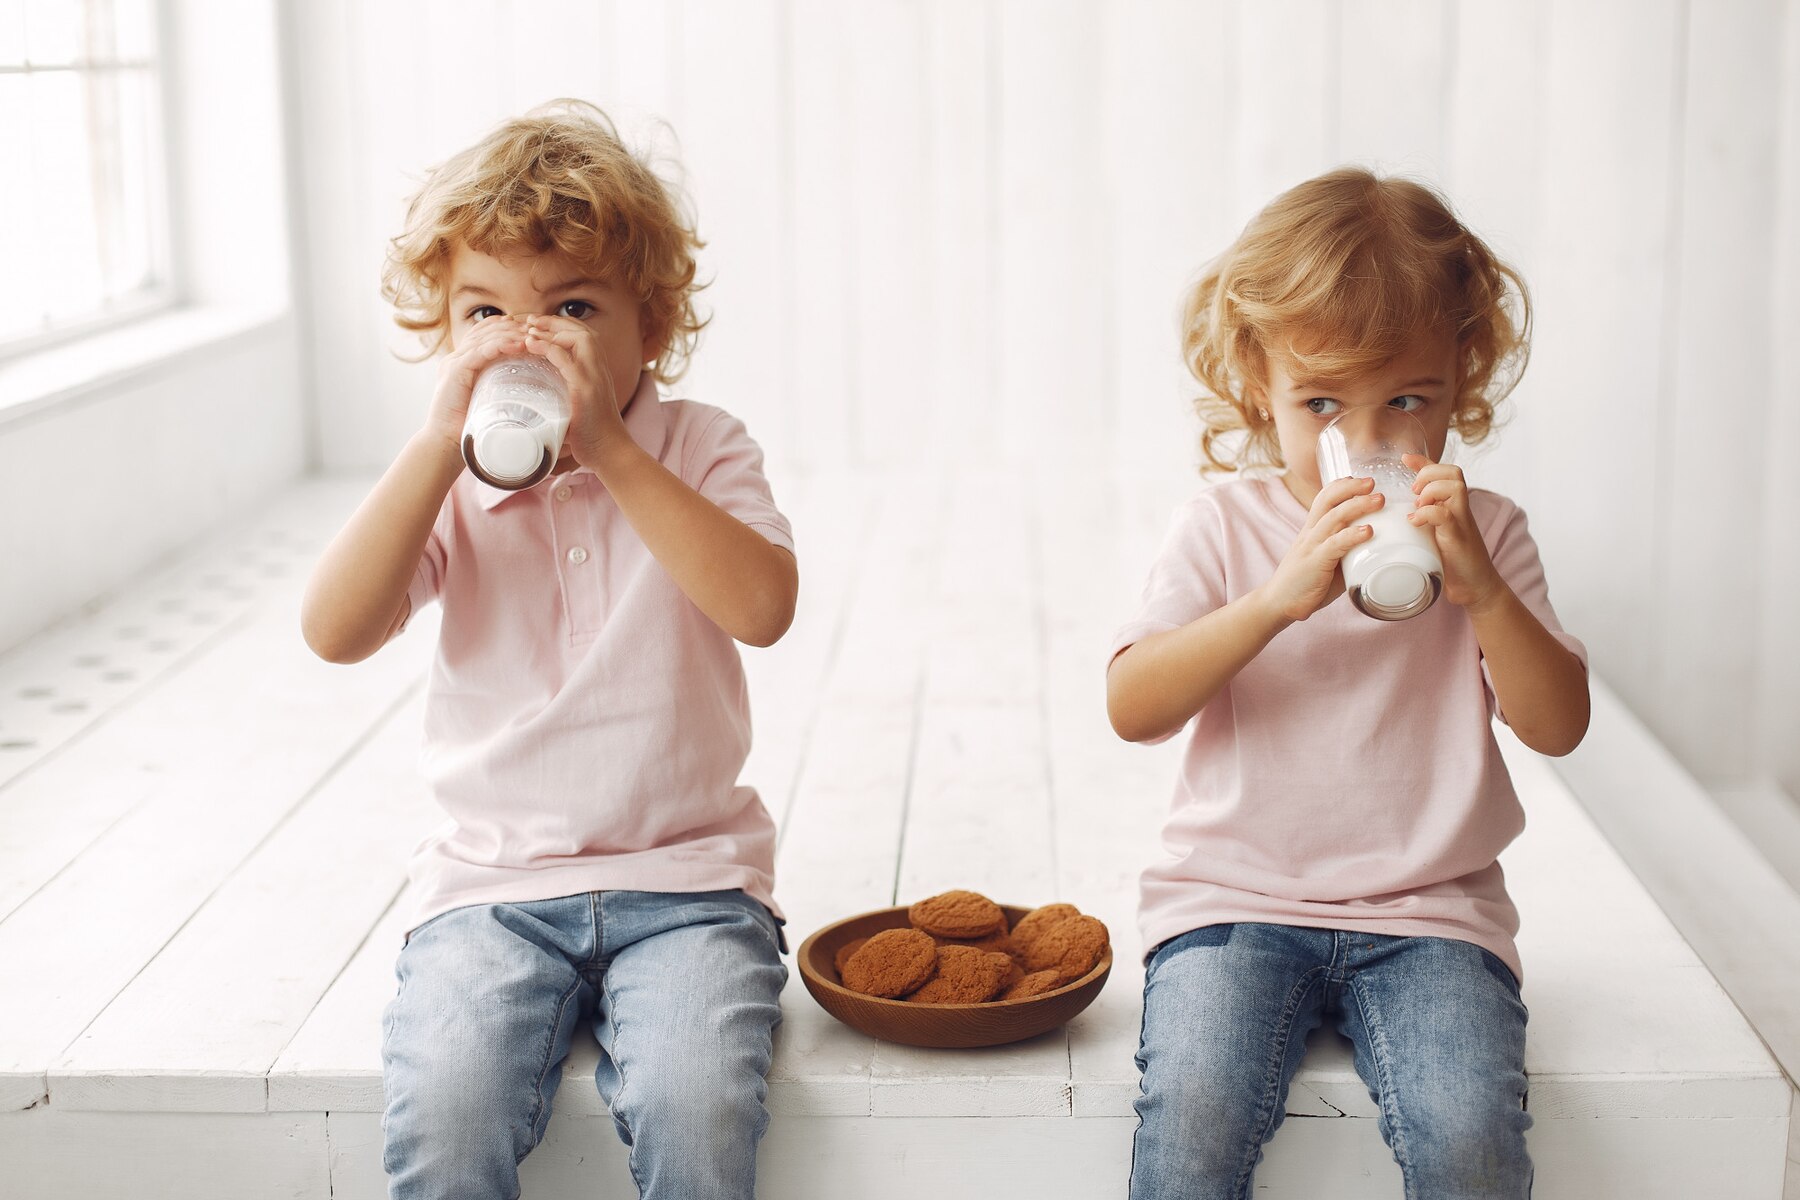 cute-children-eating-cookies-and-drinking-milk_1157-32468.jpg